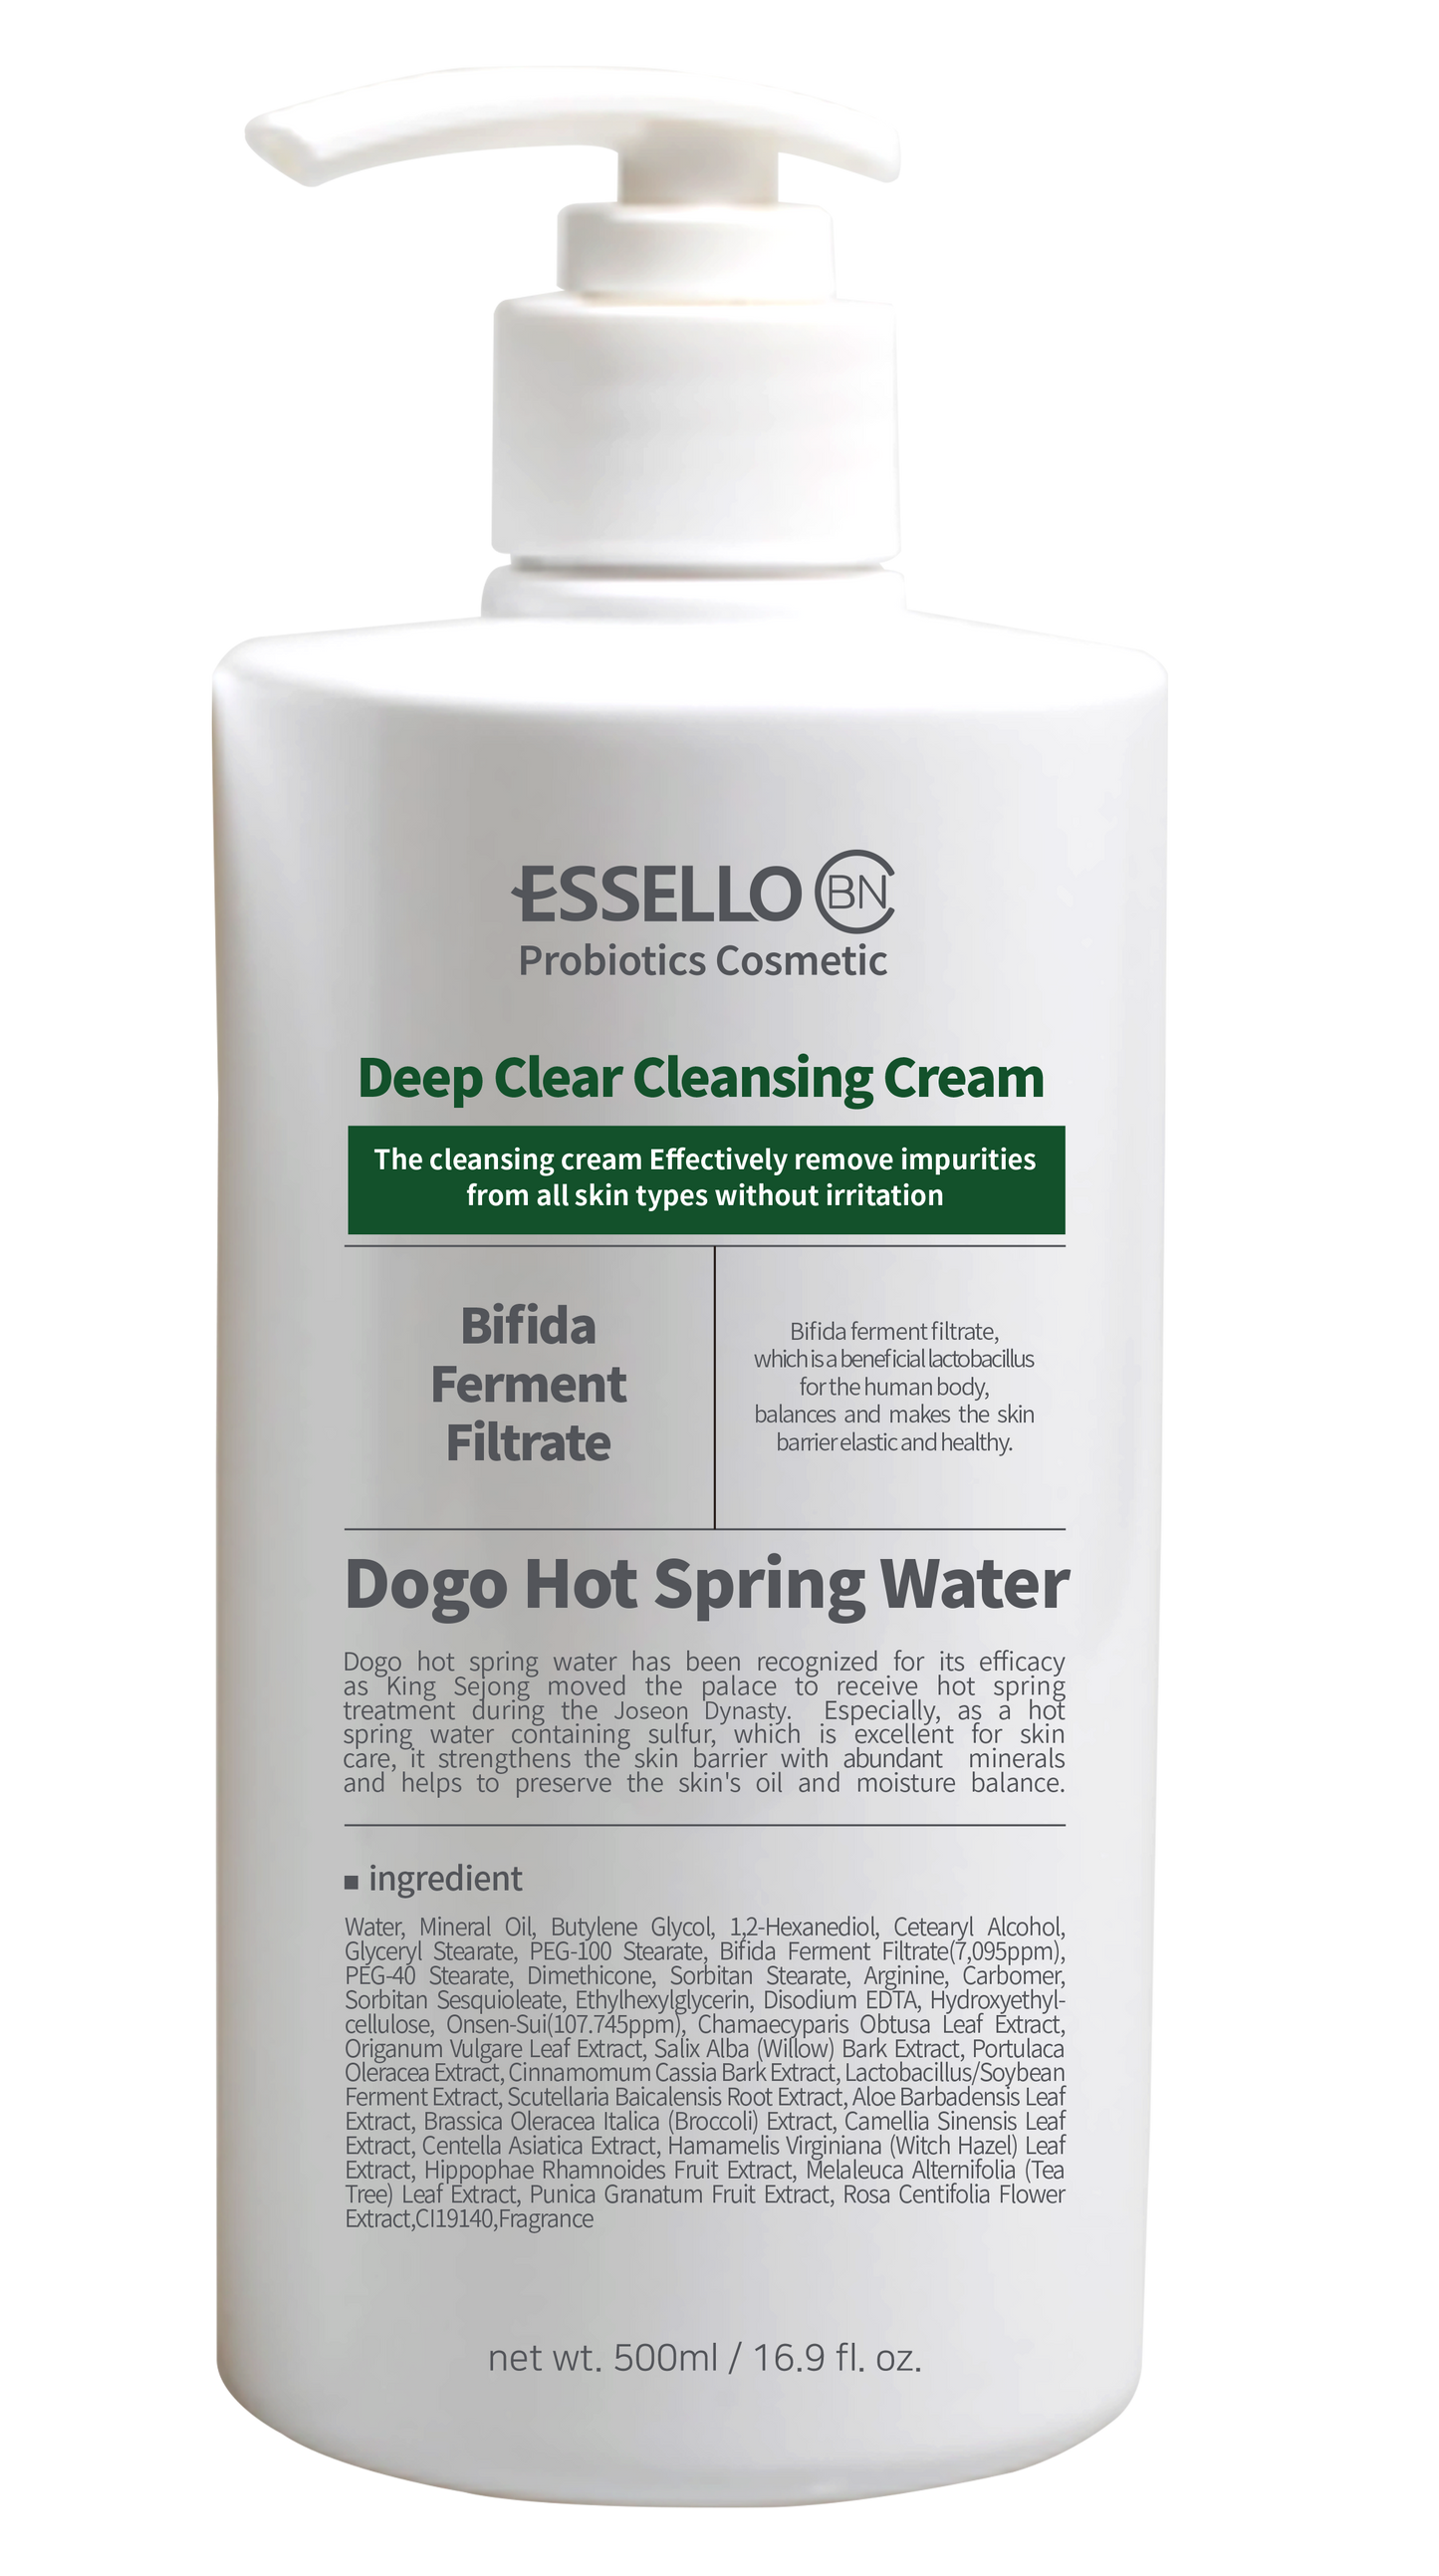 BNC Deep Clear Cleansing Cream